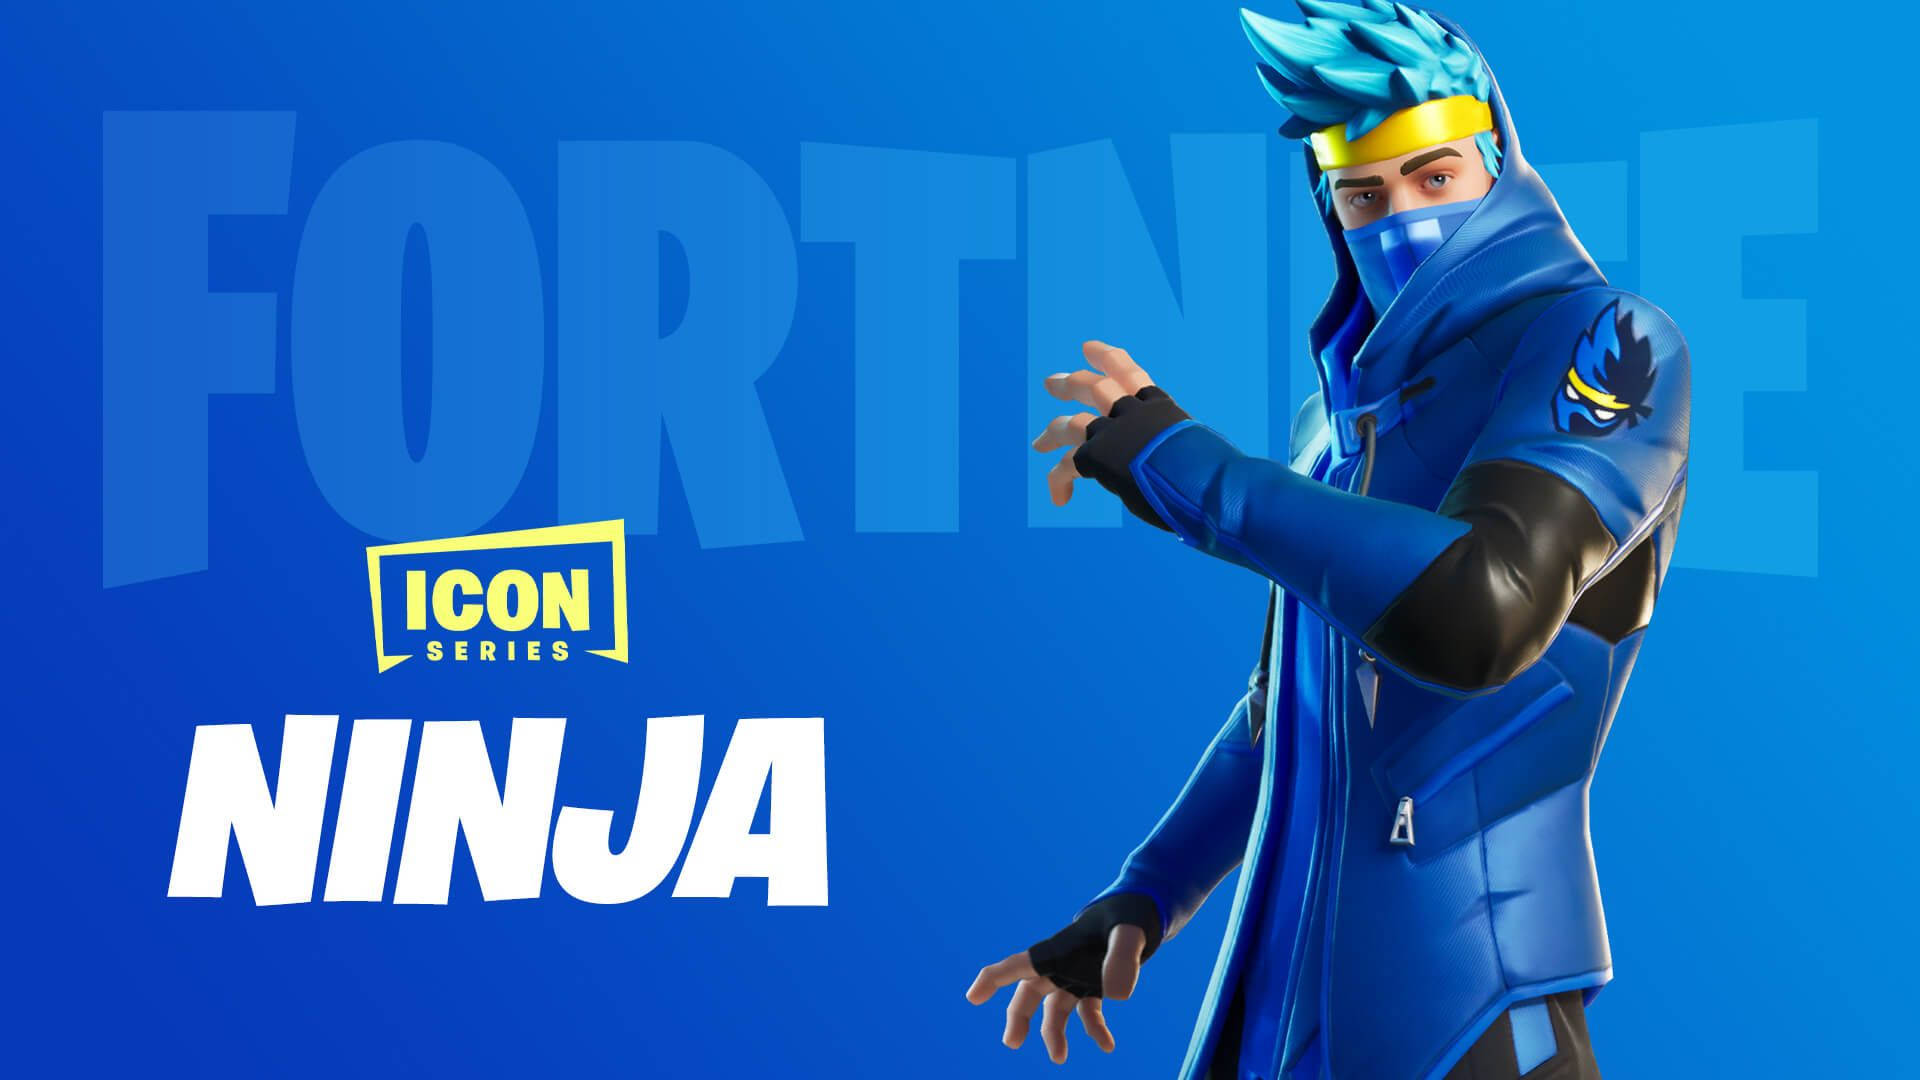 Ninjafortnite Avatar Oficial Em Papel De Parede Para Computador Ou Celular. Papel de Parede